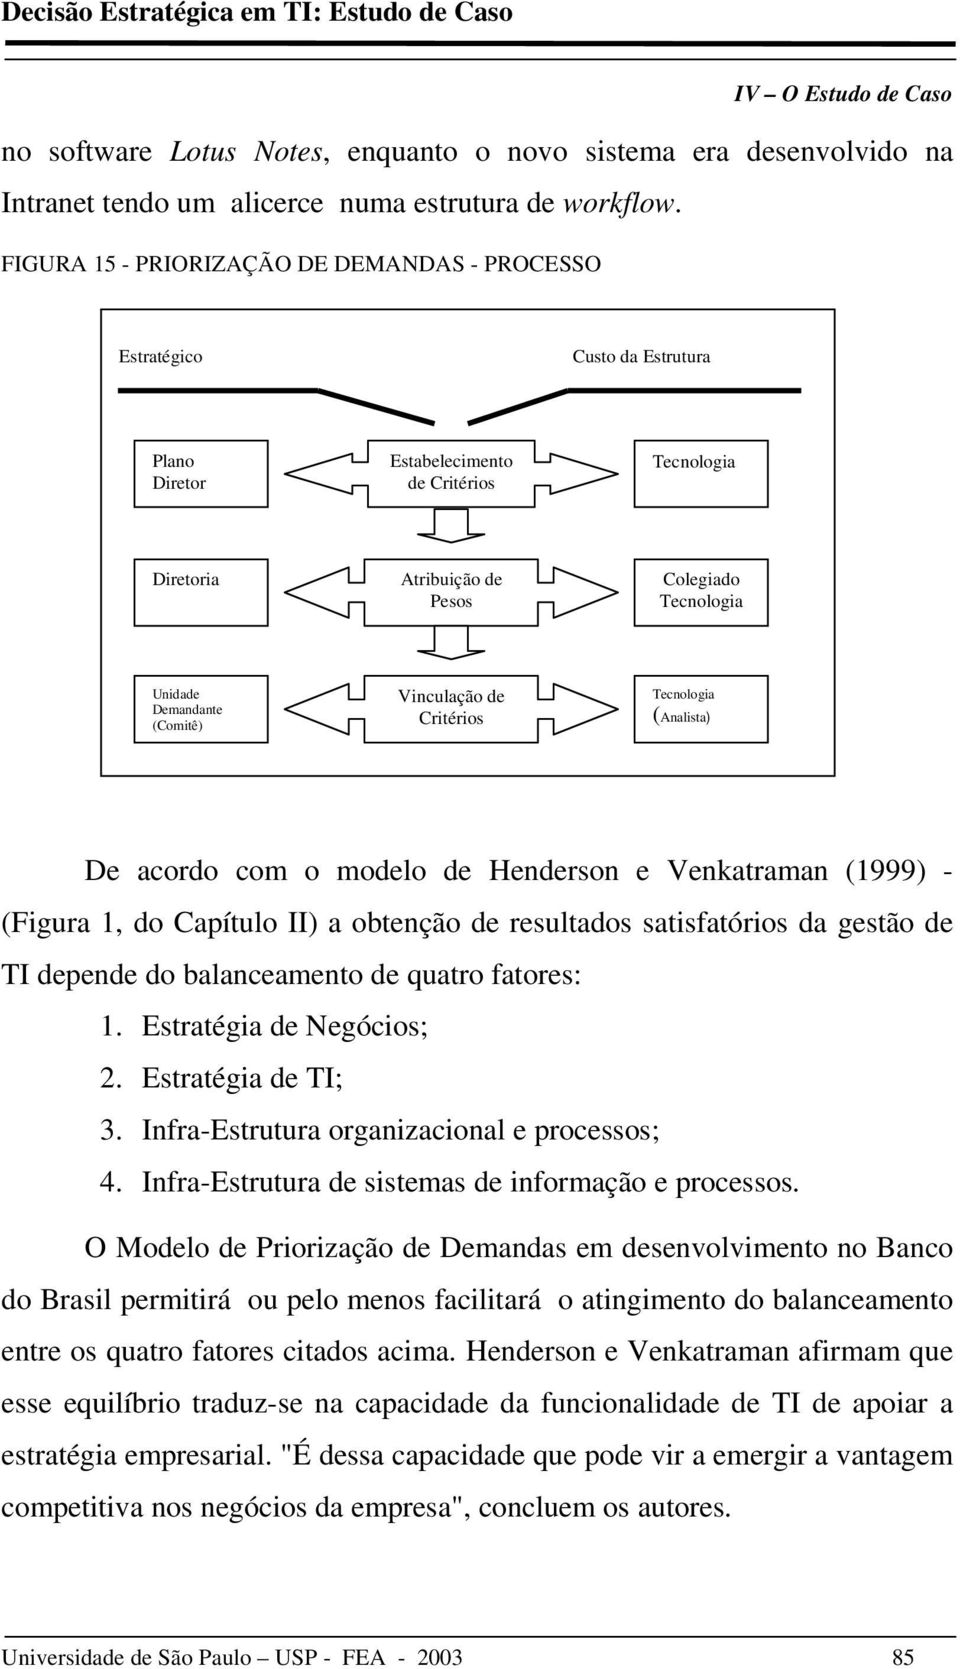 Demandante (Comitê) Vinculação de Critérios Tecnologia (Analista) ) De acordo com o modelo de Henderson e Venkatraman (1999) - (Figura 1, do Capítulo II) a obtenção de resultados satisfatórios da